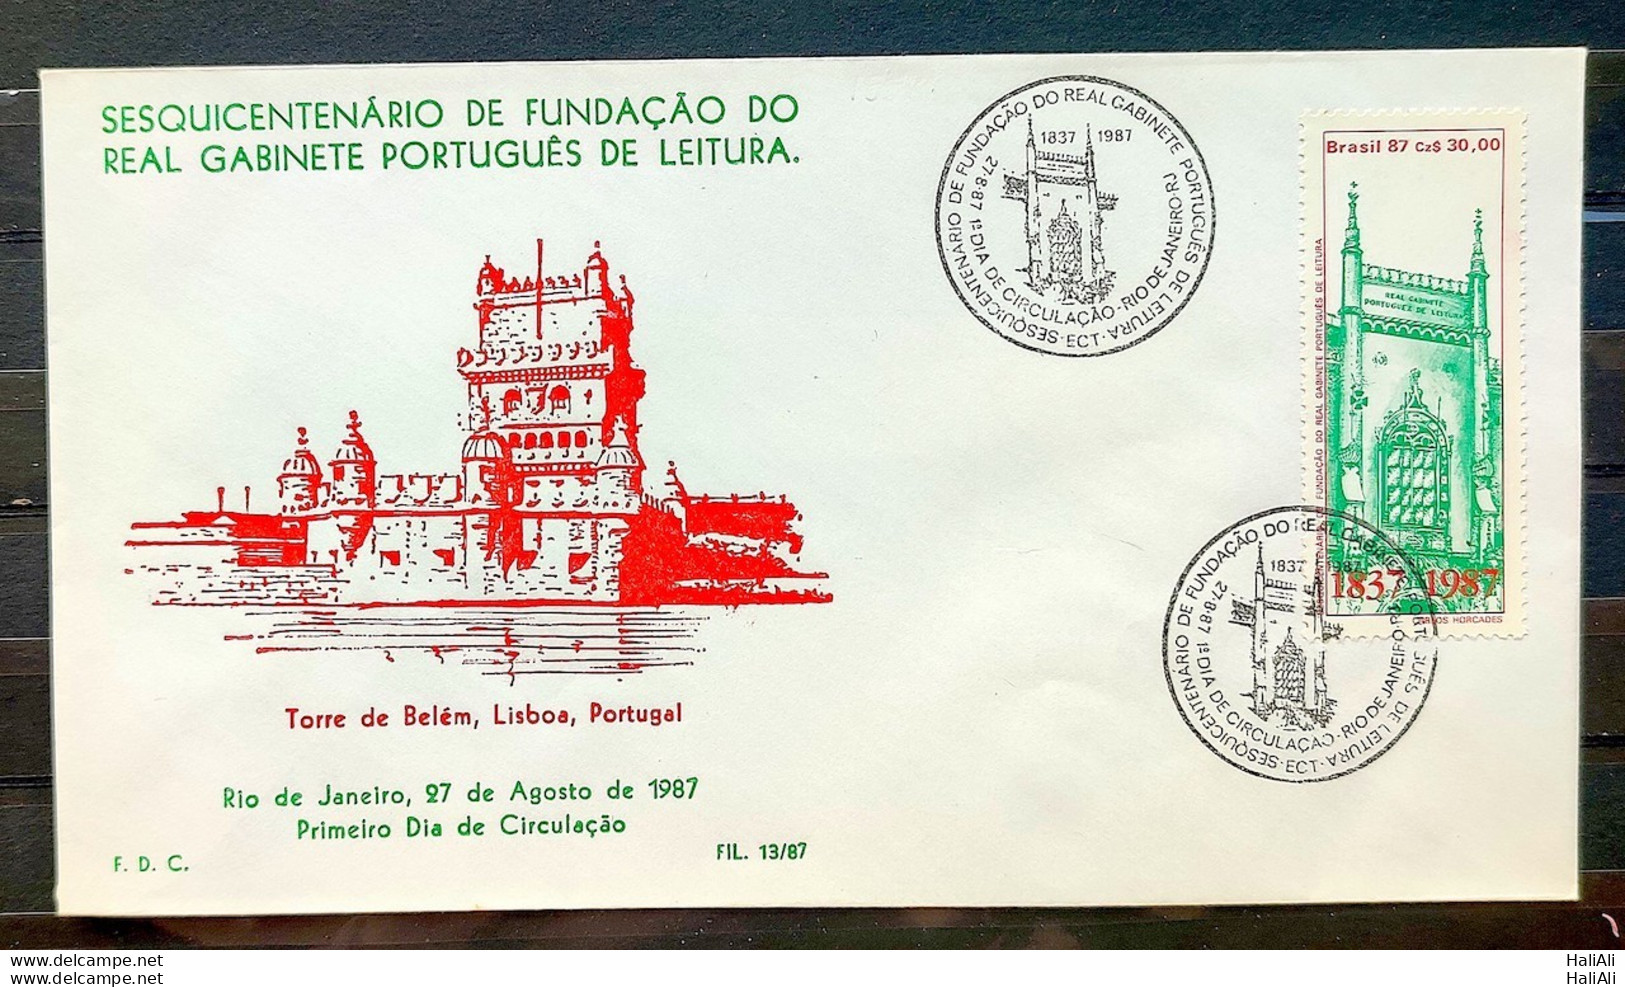 Brazil Envelope PVT FIL 013 1987 Real Portuguese Cabinet Reading Education CBC RJ - FDC